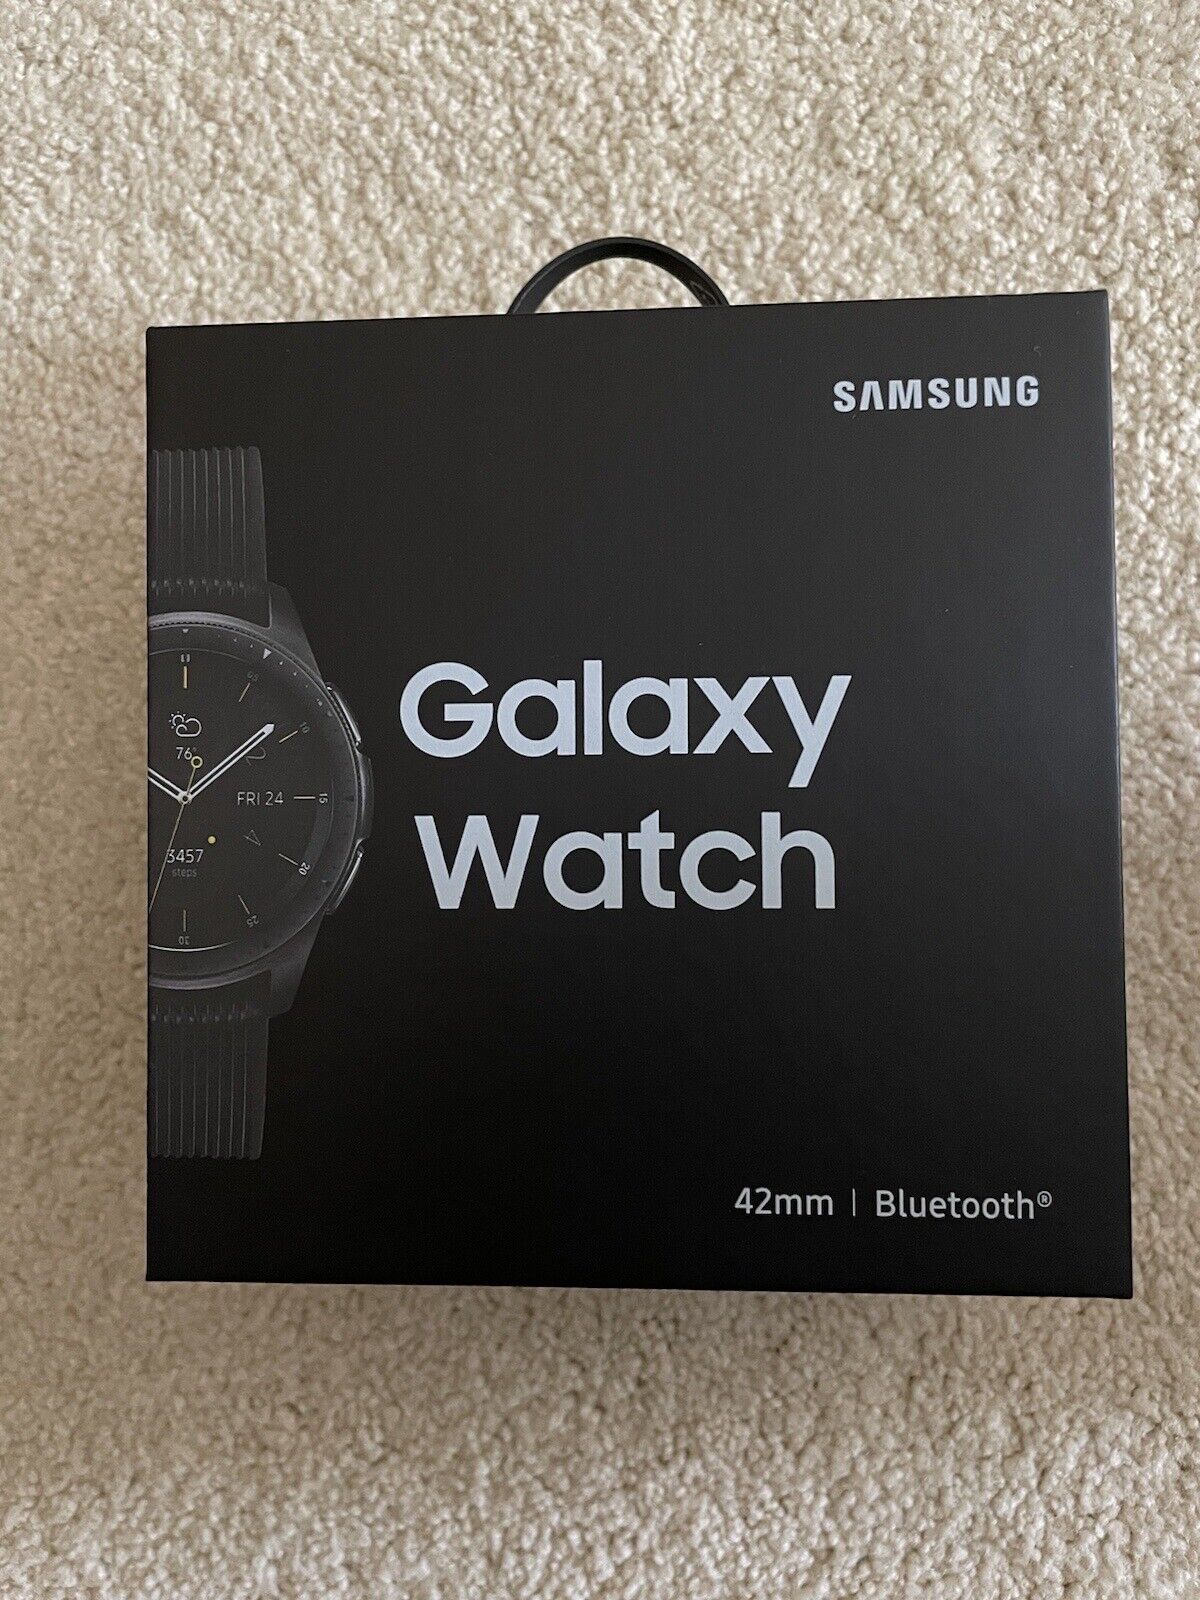 Samsung Galaxy Watch 42mm - Midnight Black for sale online | eBay